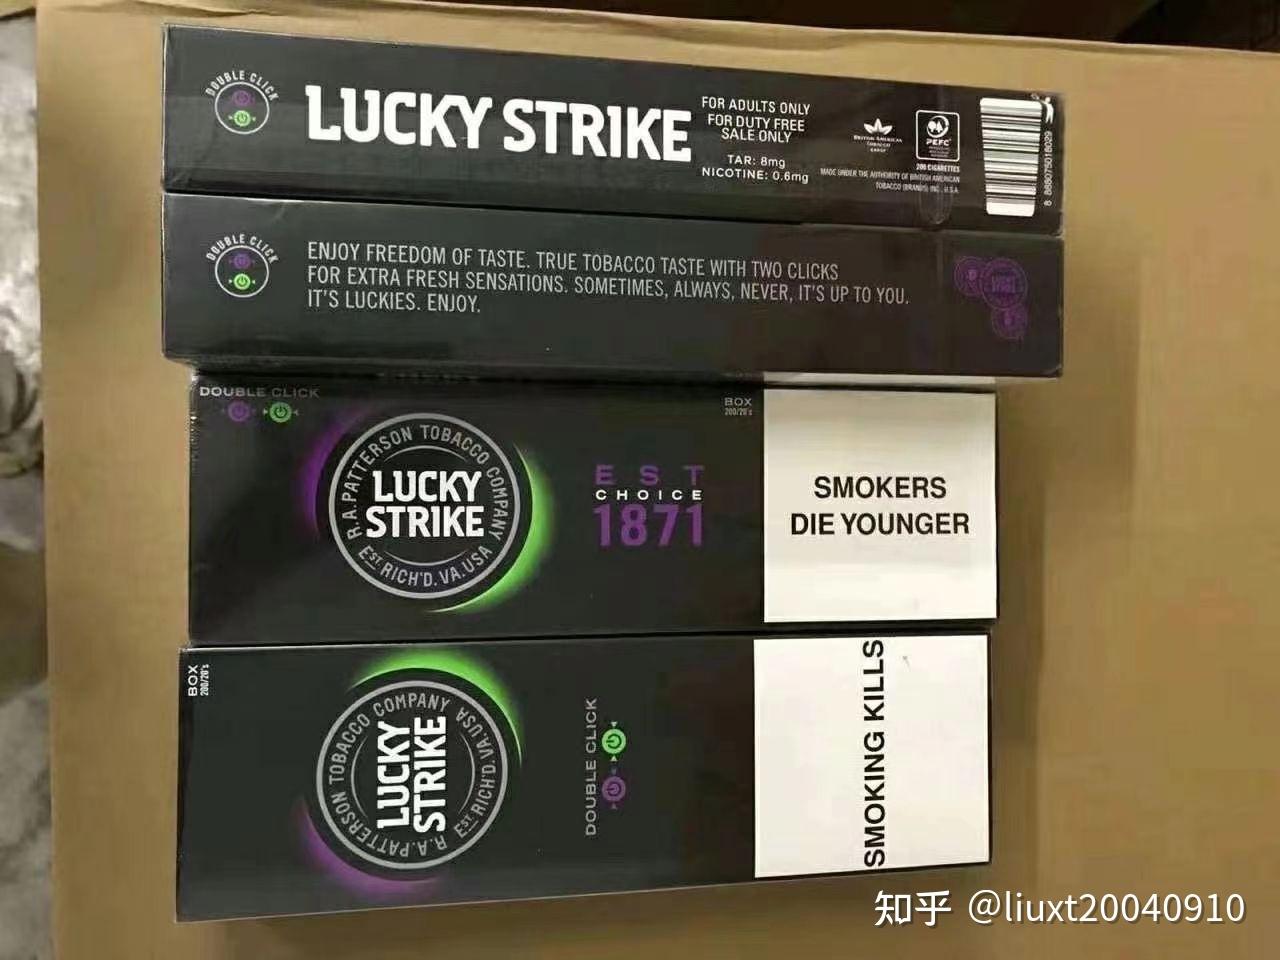 好彩香烟鲜明的美国形象及悦目红圈商标,使luckystrike品牌是英美